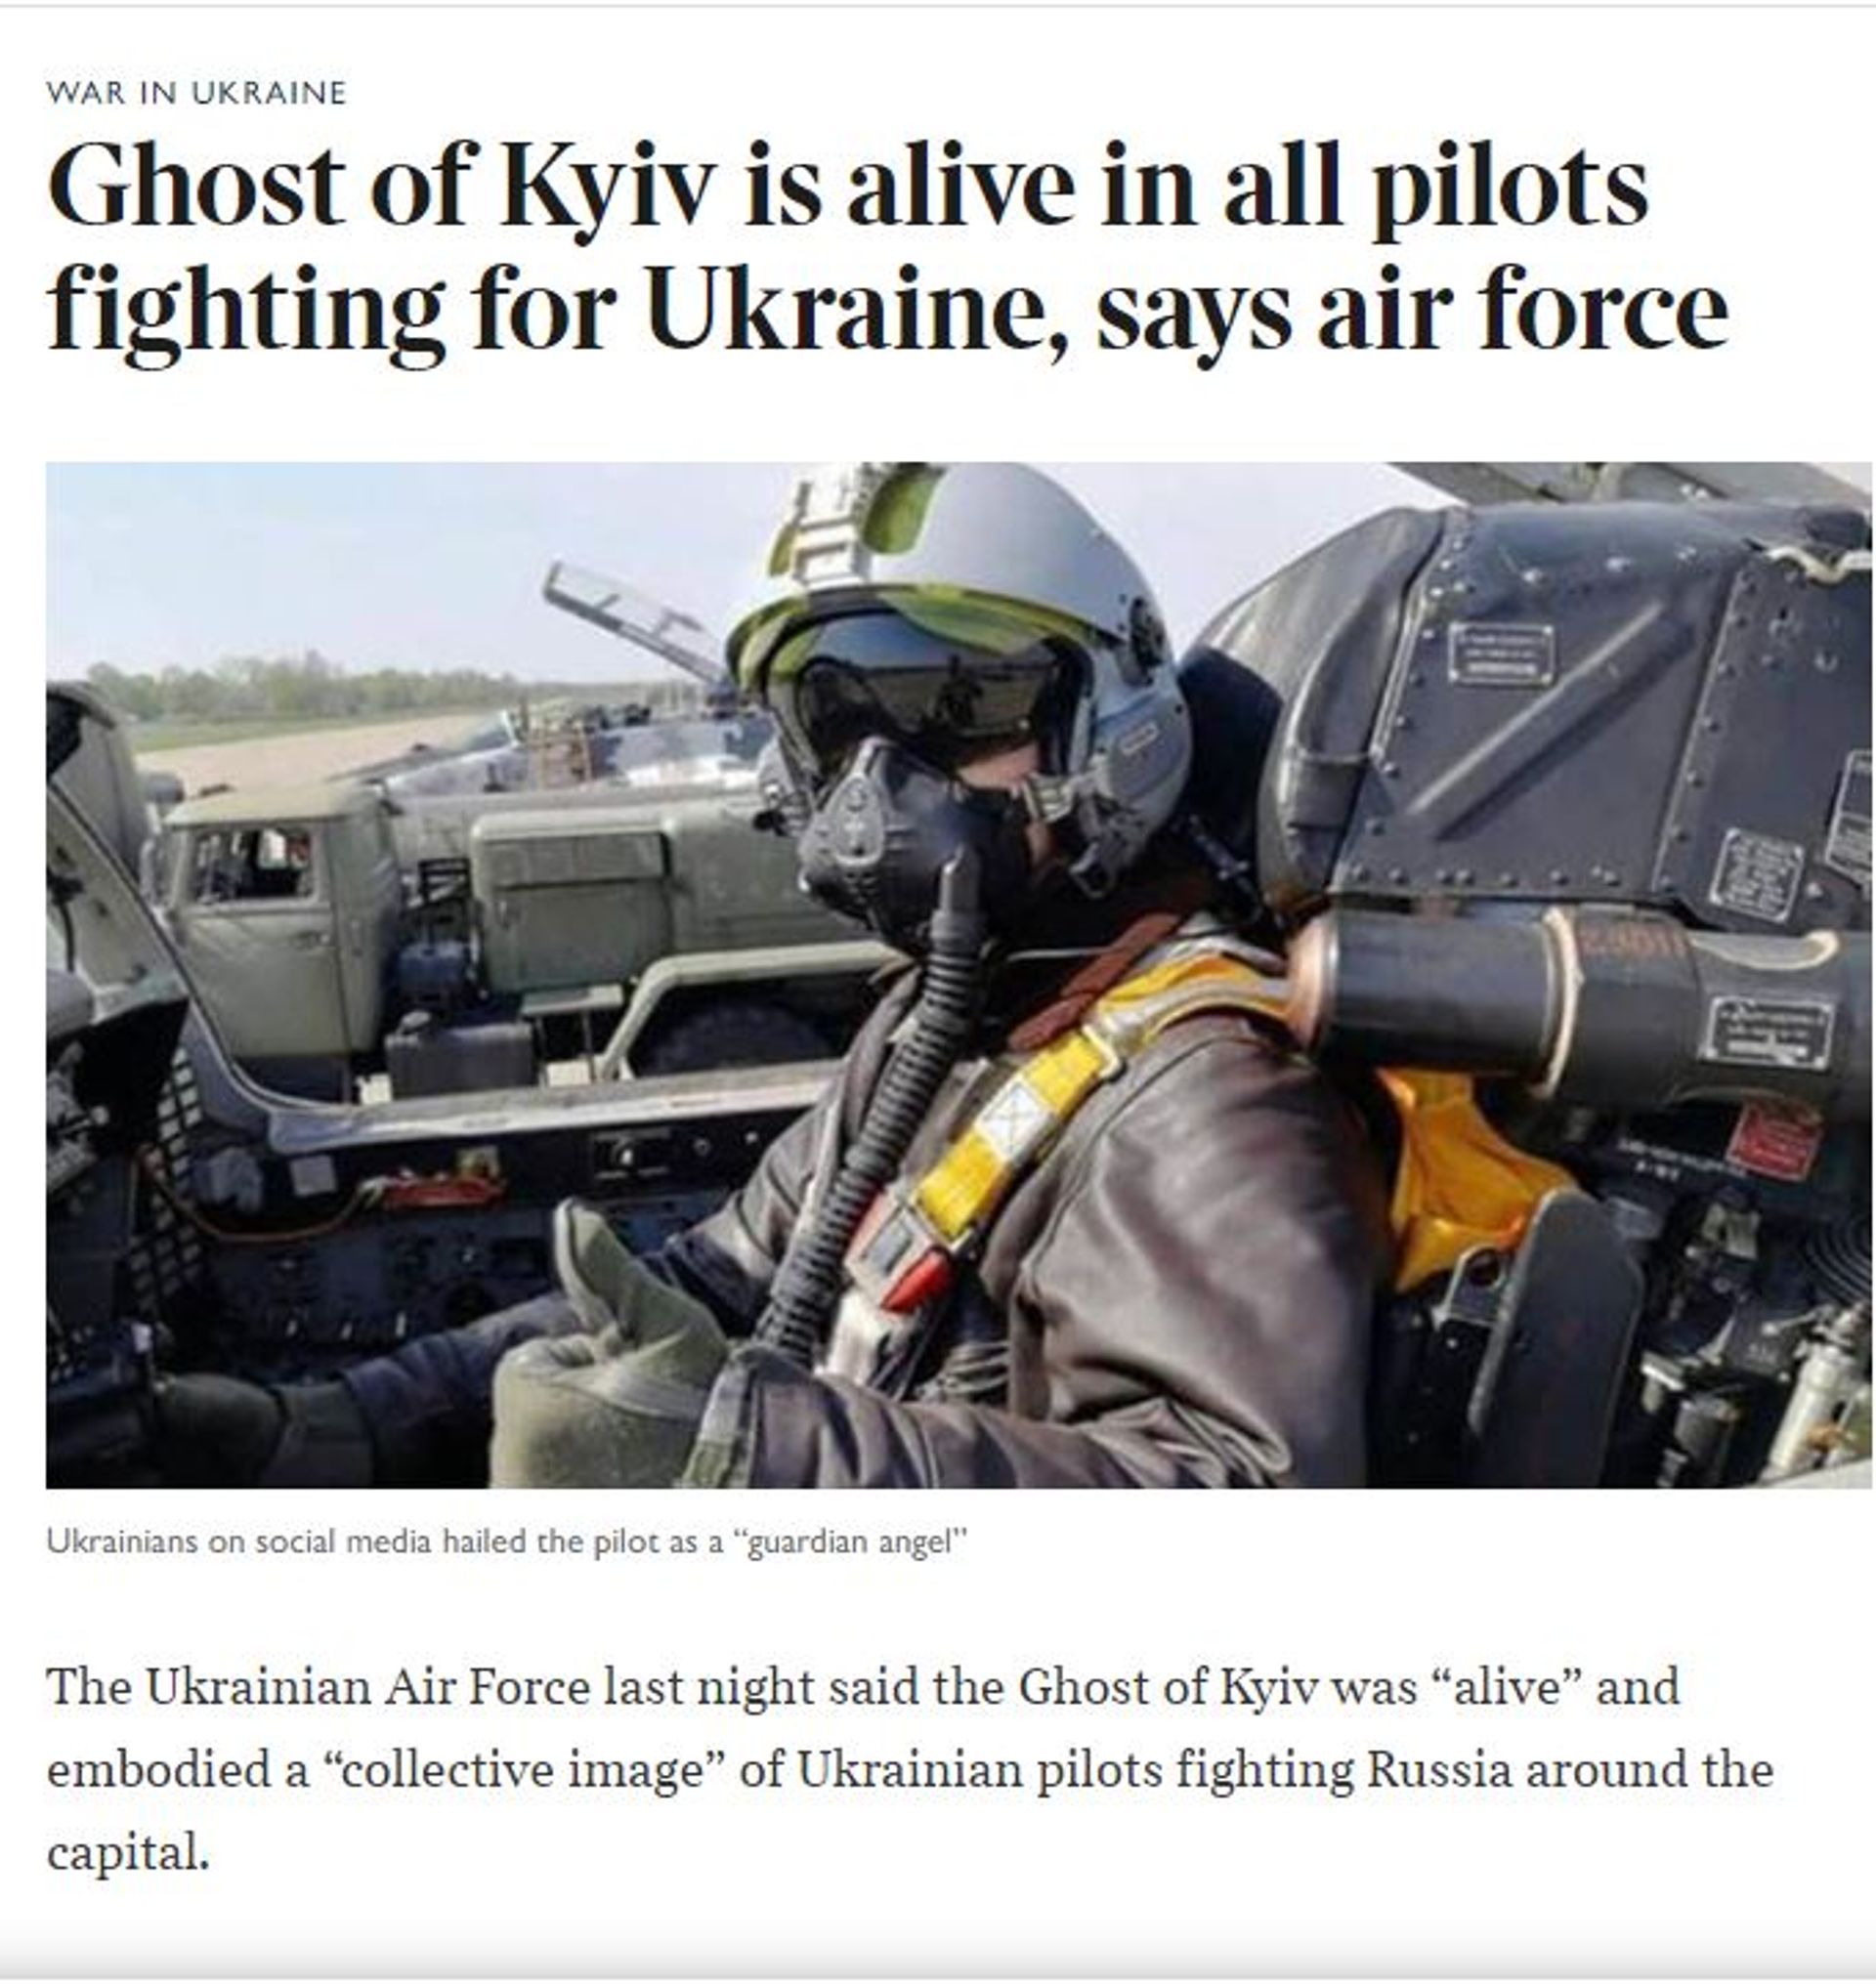 L'article du Times of London après sa mise à jour suite aux déclarations de l'armée de l'air ukrainienne. 